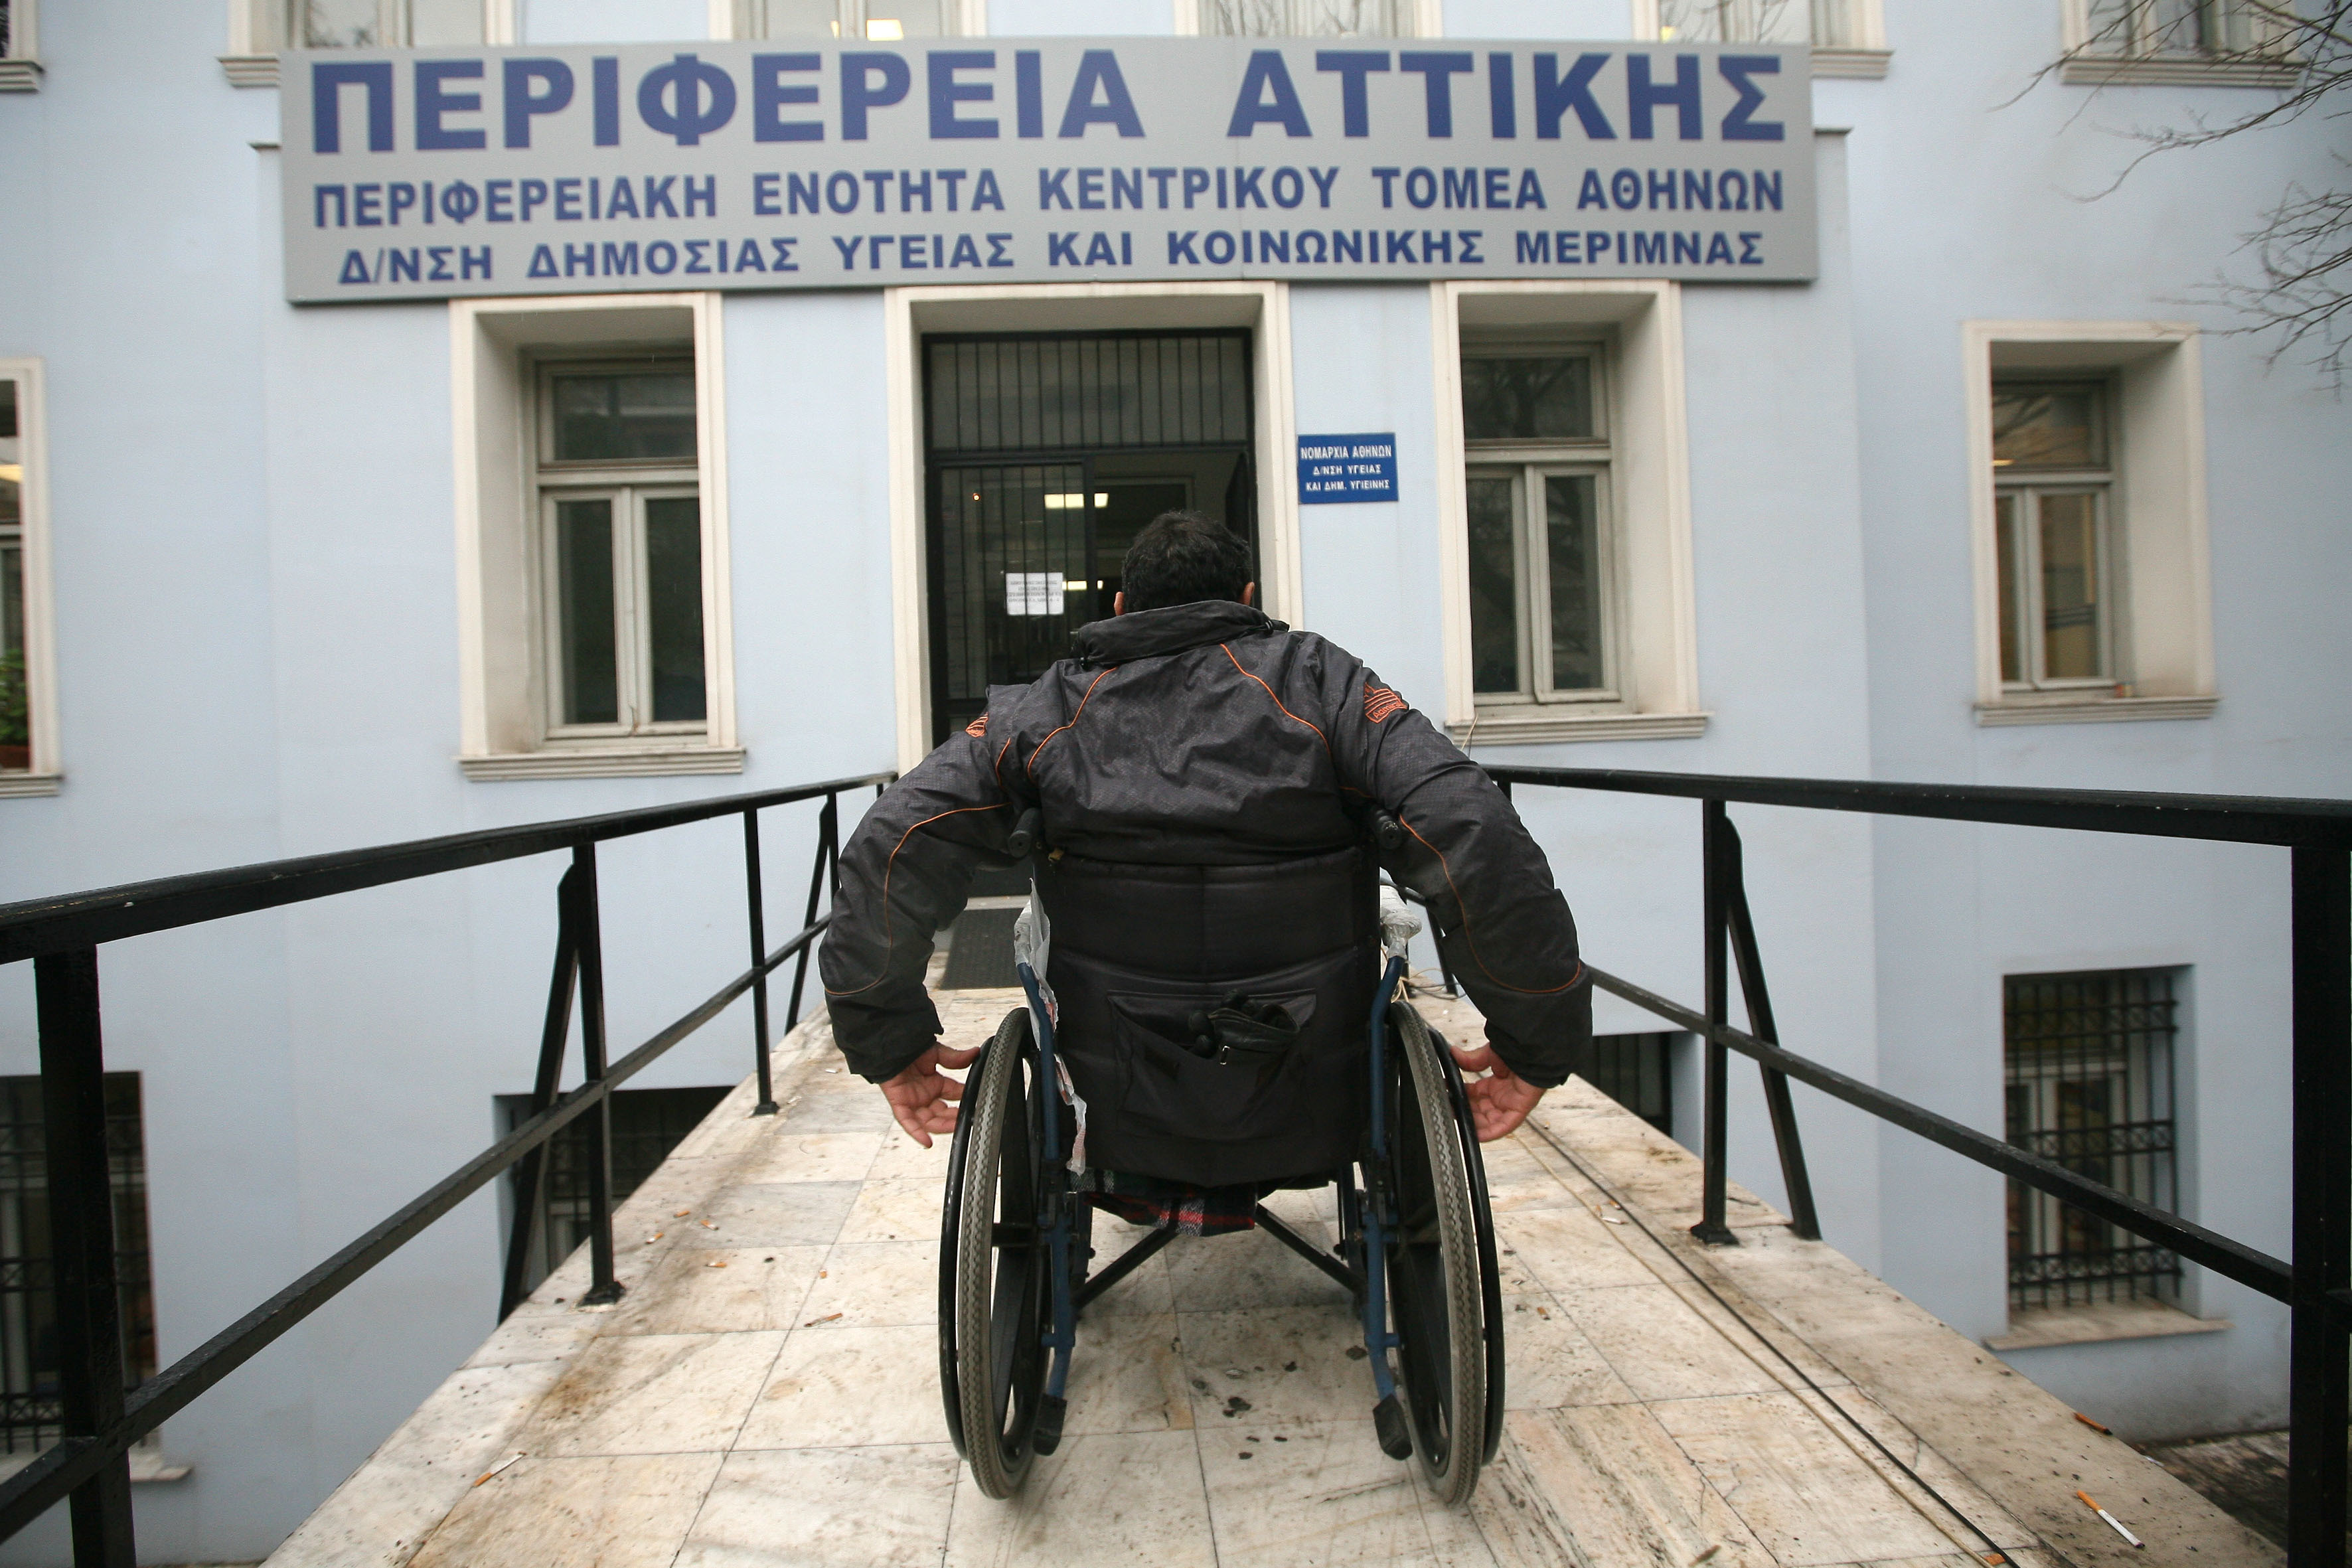 Εξάμηνη παράταση στην καταβολή των αναπηρικών συντάξεων – Ποιους αφορά